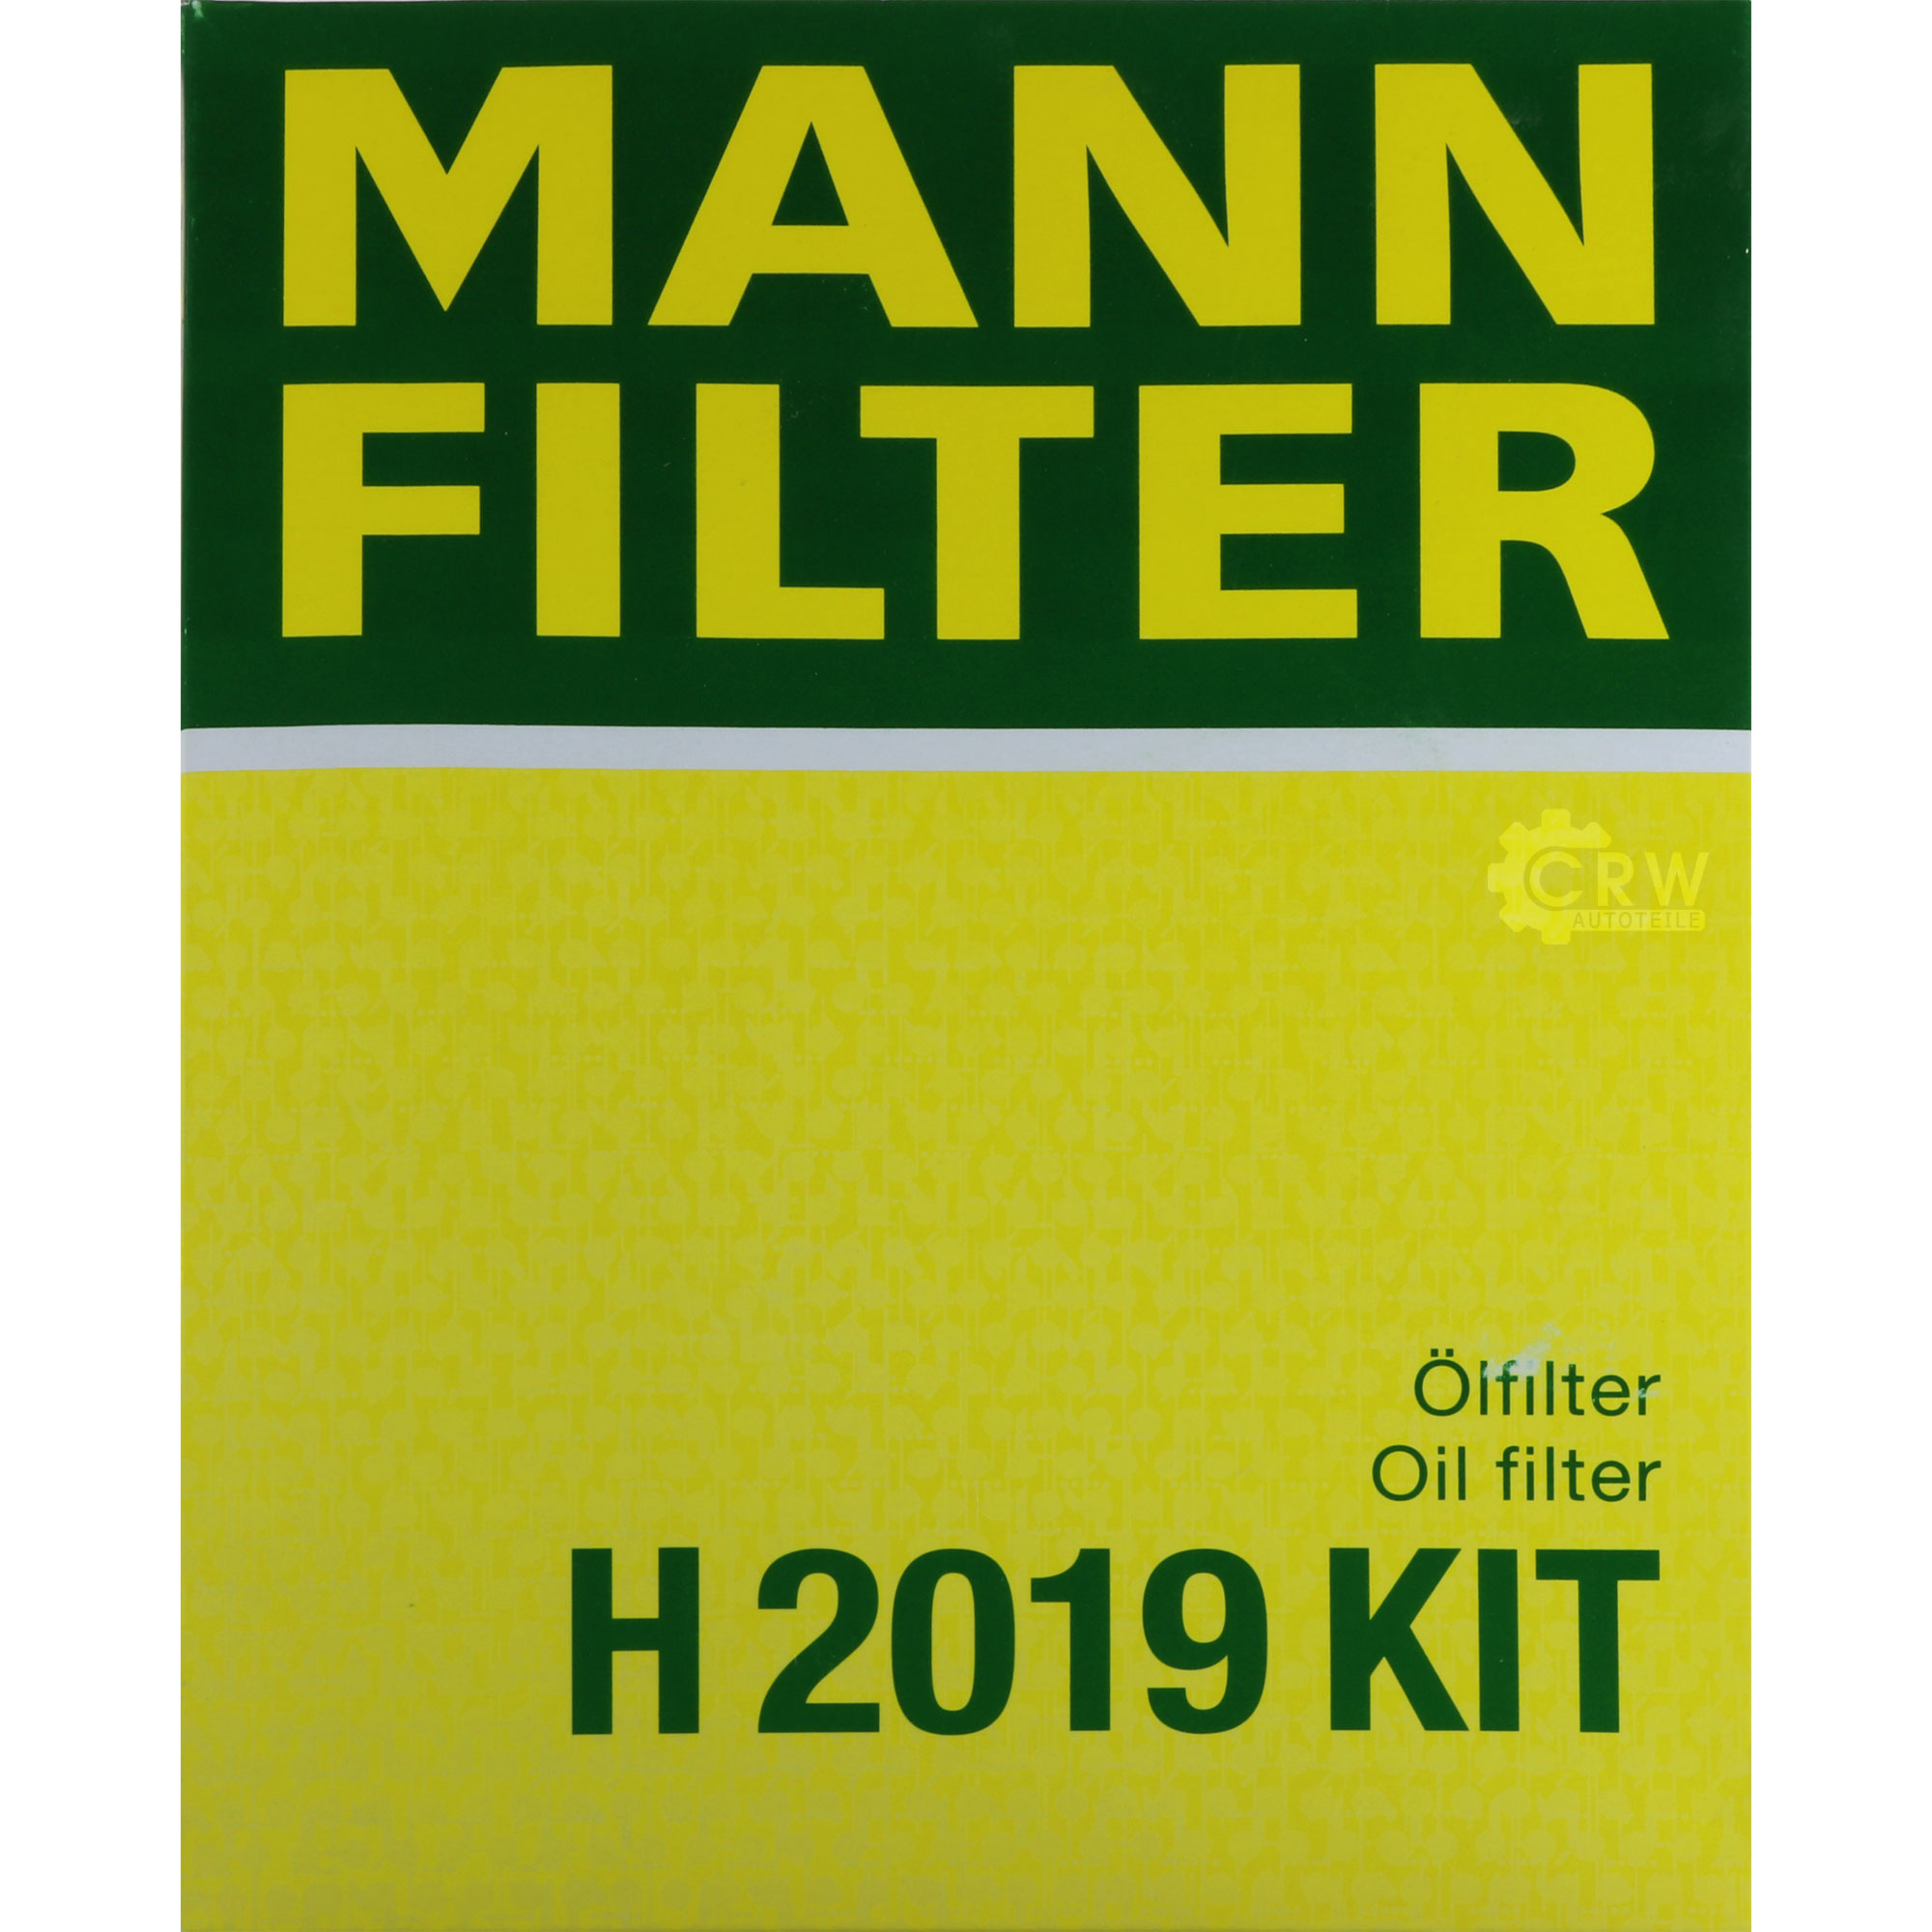 MANN-FILTER Getriebeölfilter für Automatikgetriebe H 2019 KIT